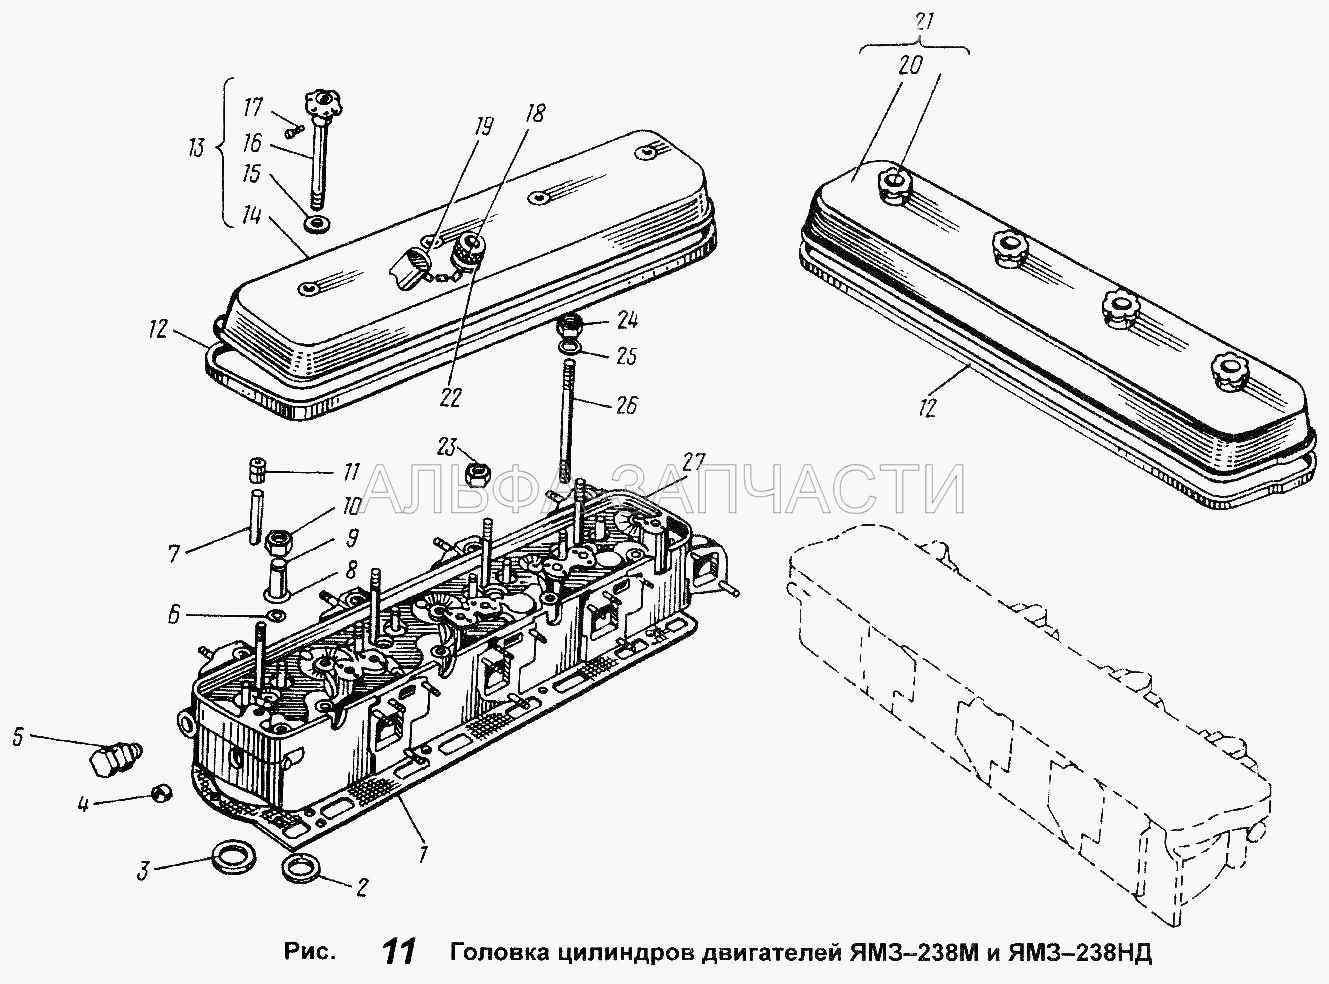 Головка цилиндров двигателей ЯМЗ-238М и ЯМЗ-238НД (236-1003016-Б Шпилька крепления головки цилиндров) 